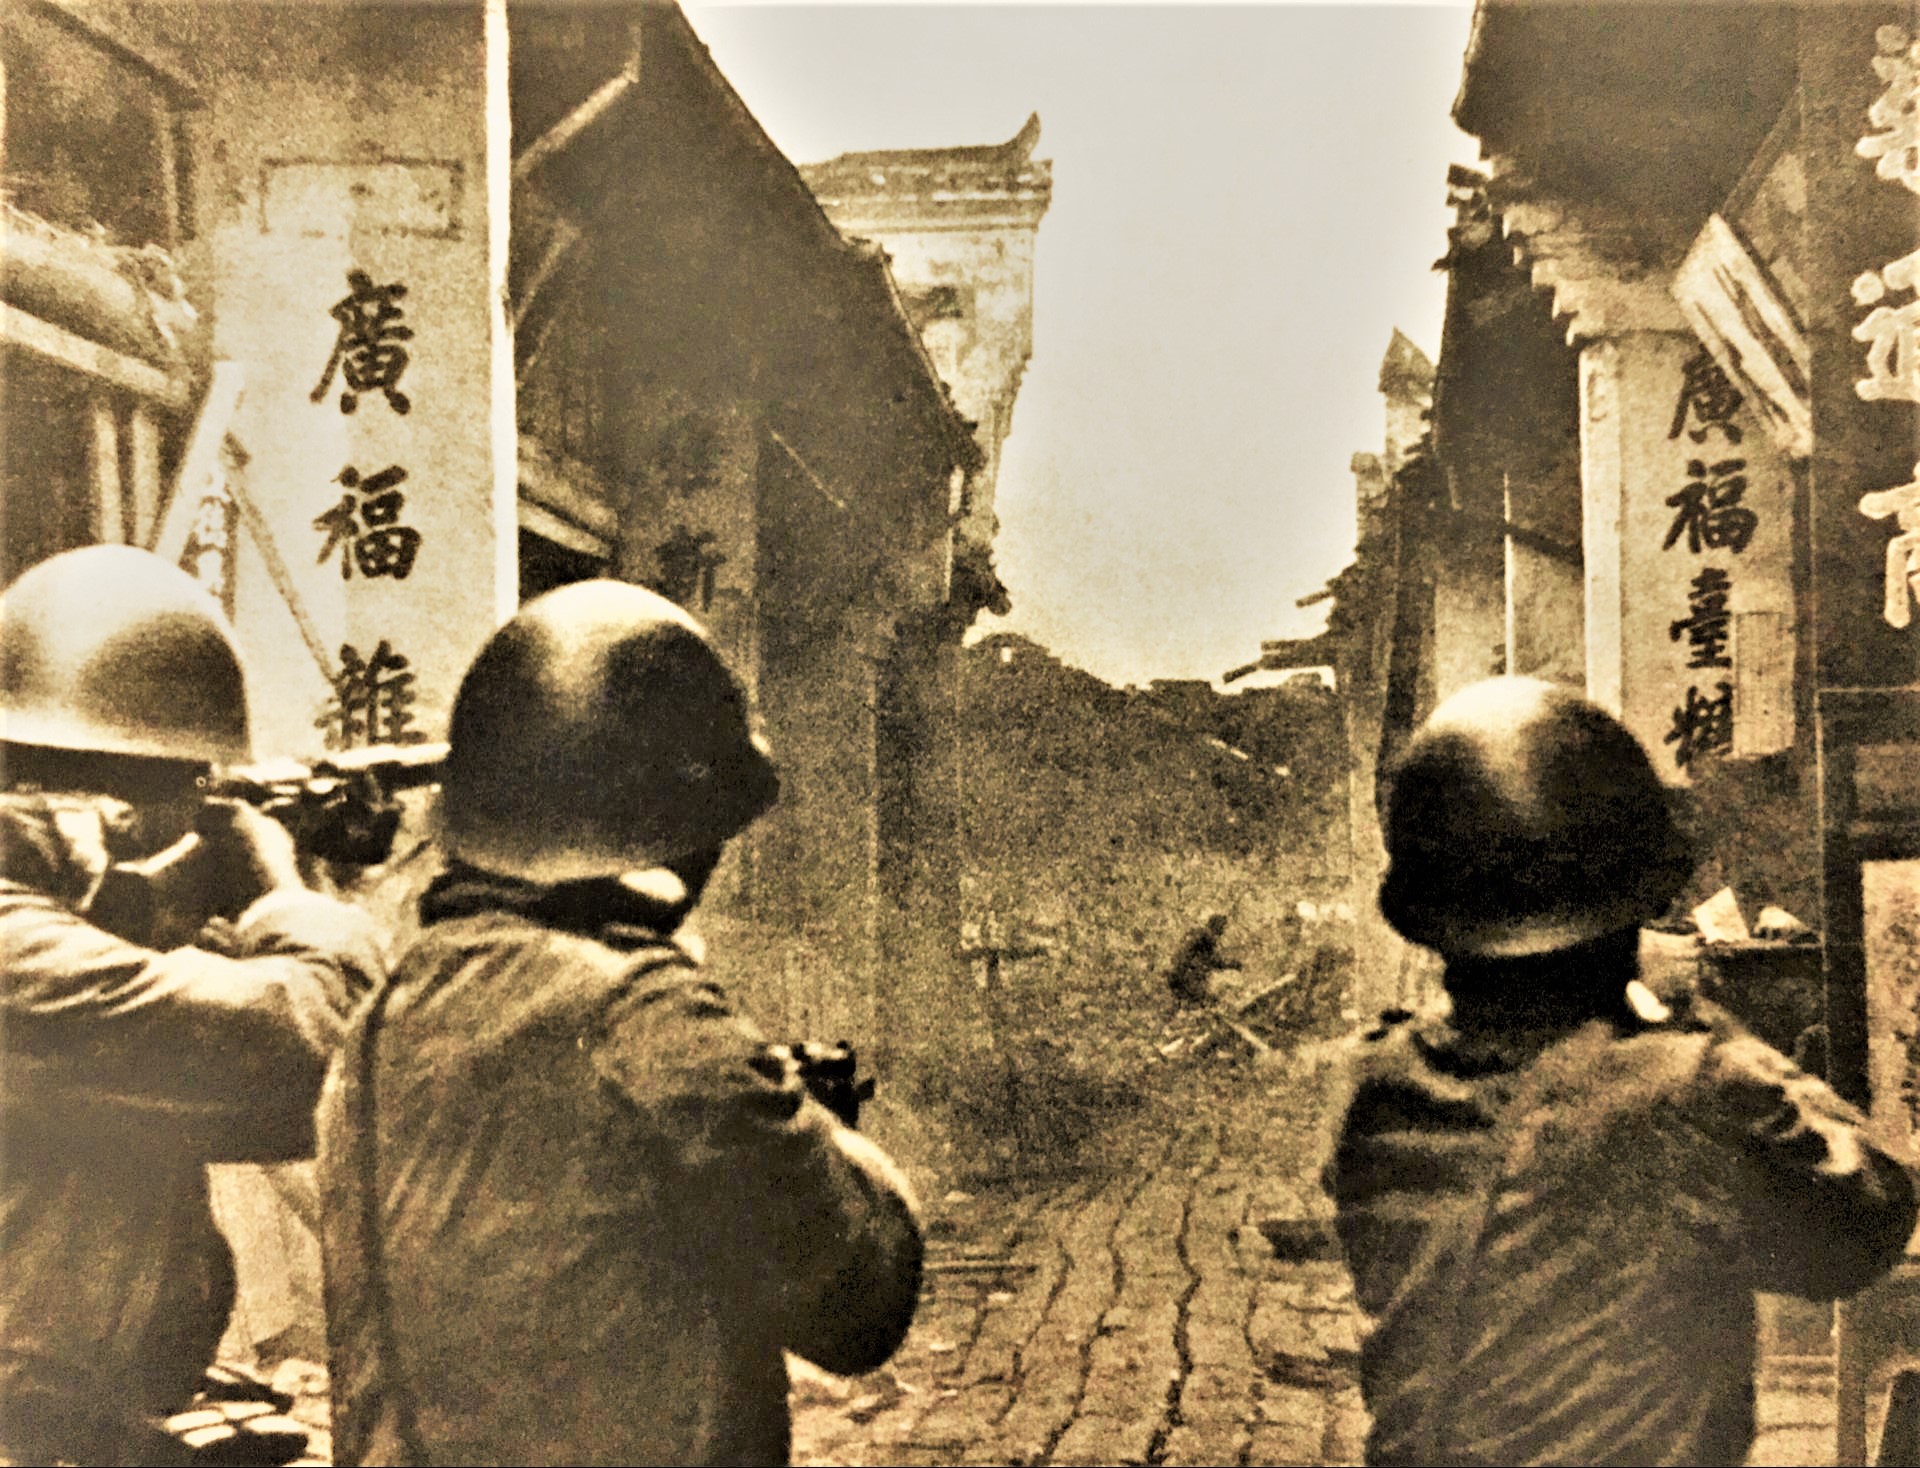 日军侵华老照片:强迫占领区百姓学日语,军官作秀给儿童发糖